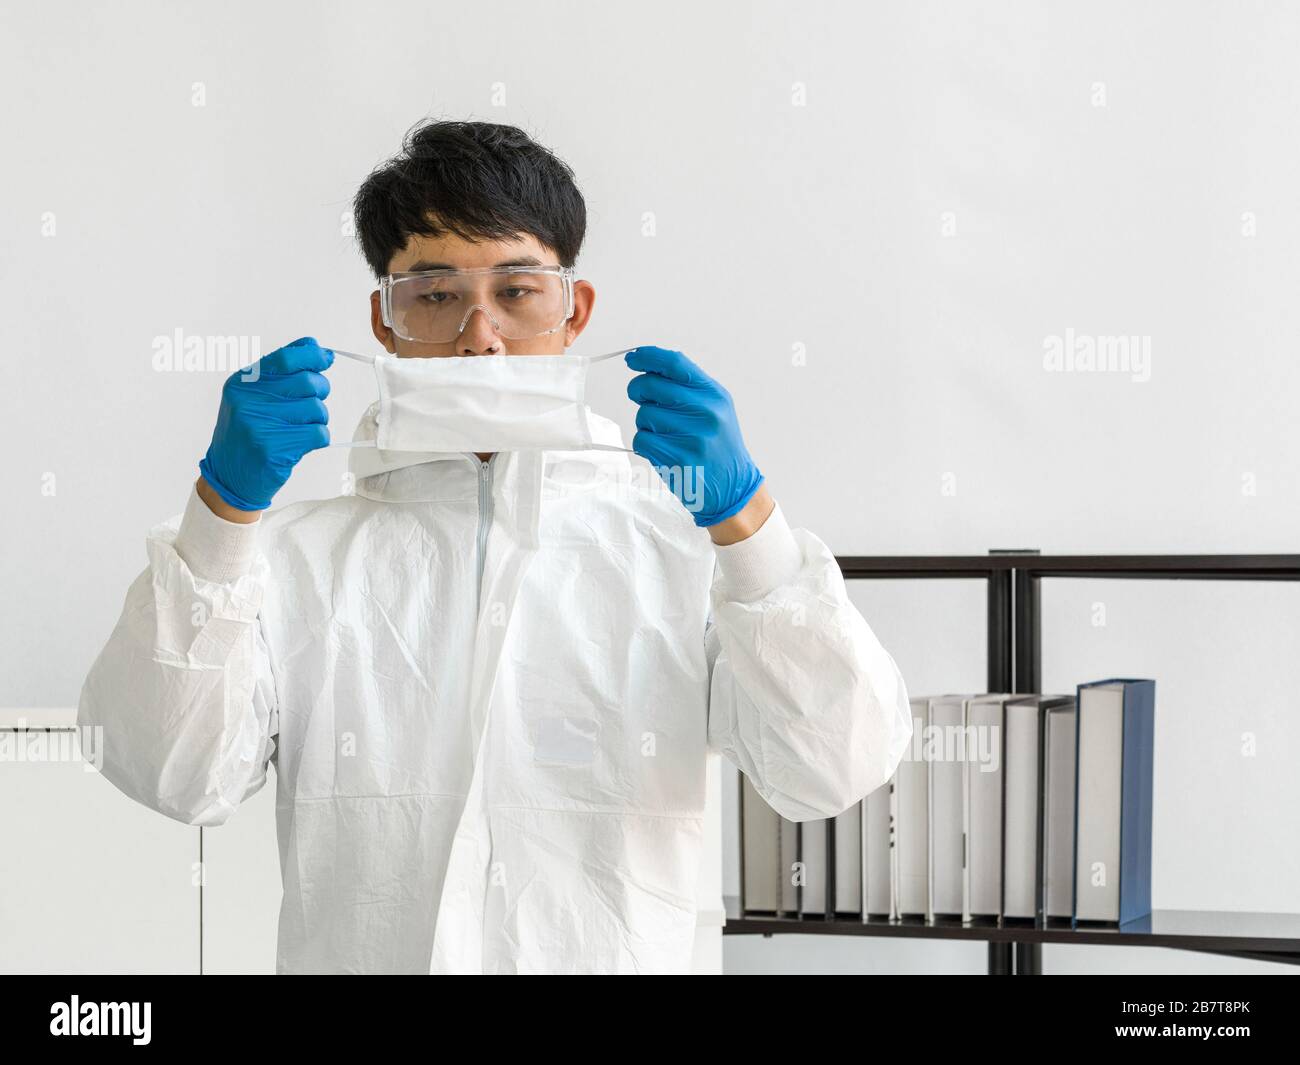 Científicos asiáticos inspeccionan la calidad de una máscara antes de comenzar el experimento en un laboratorio científico. Foto de stock